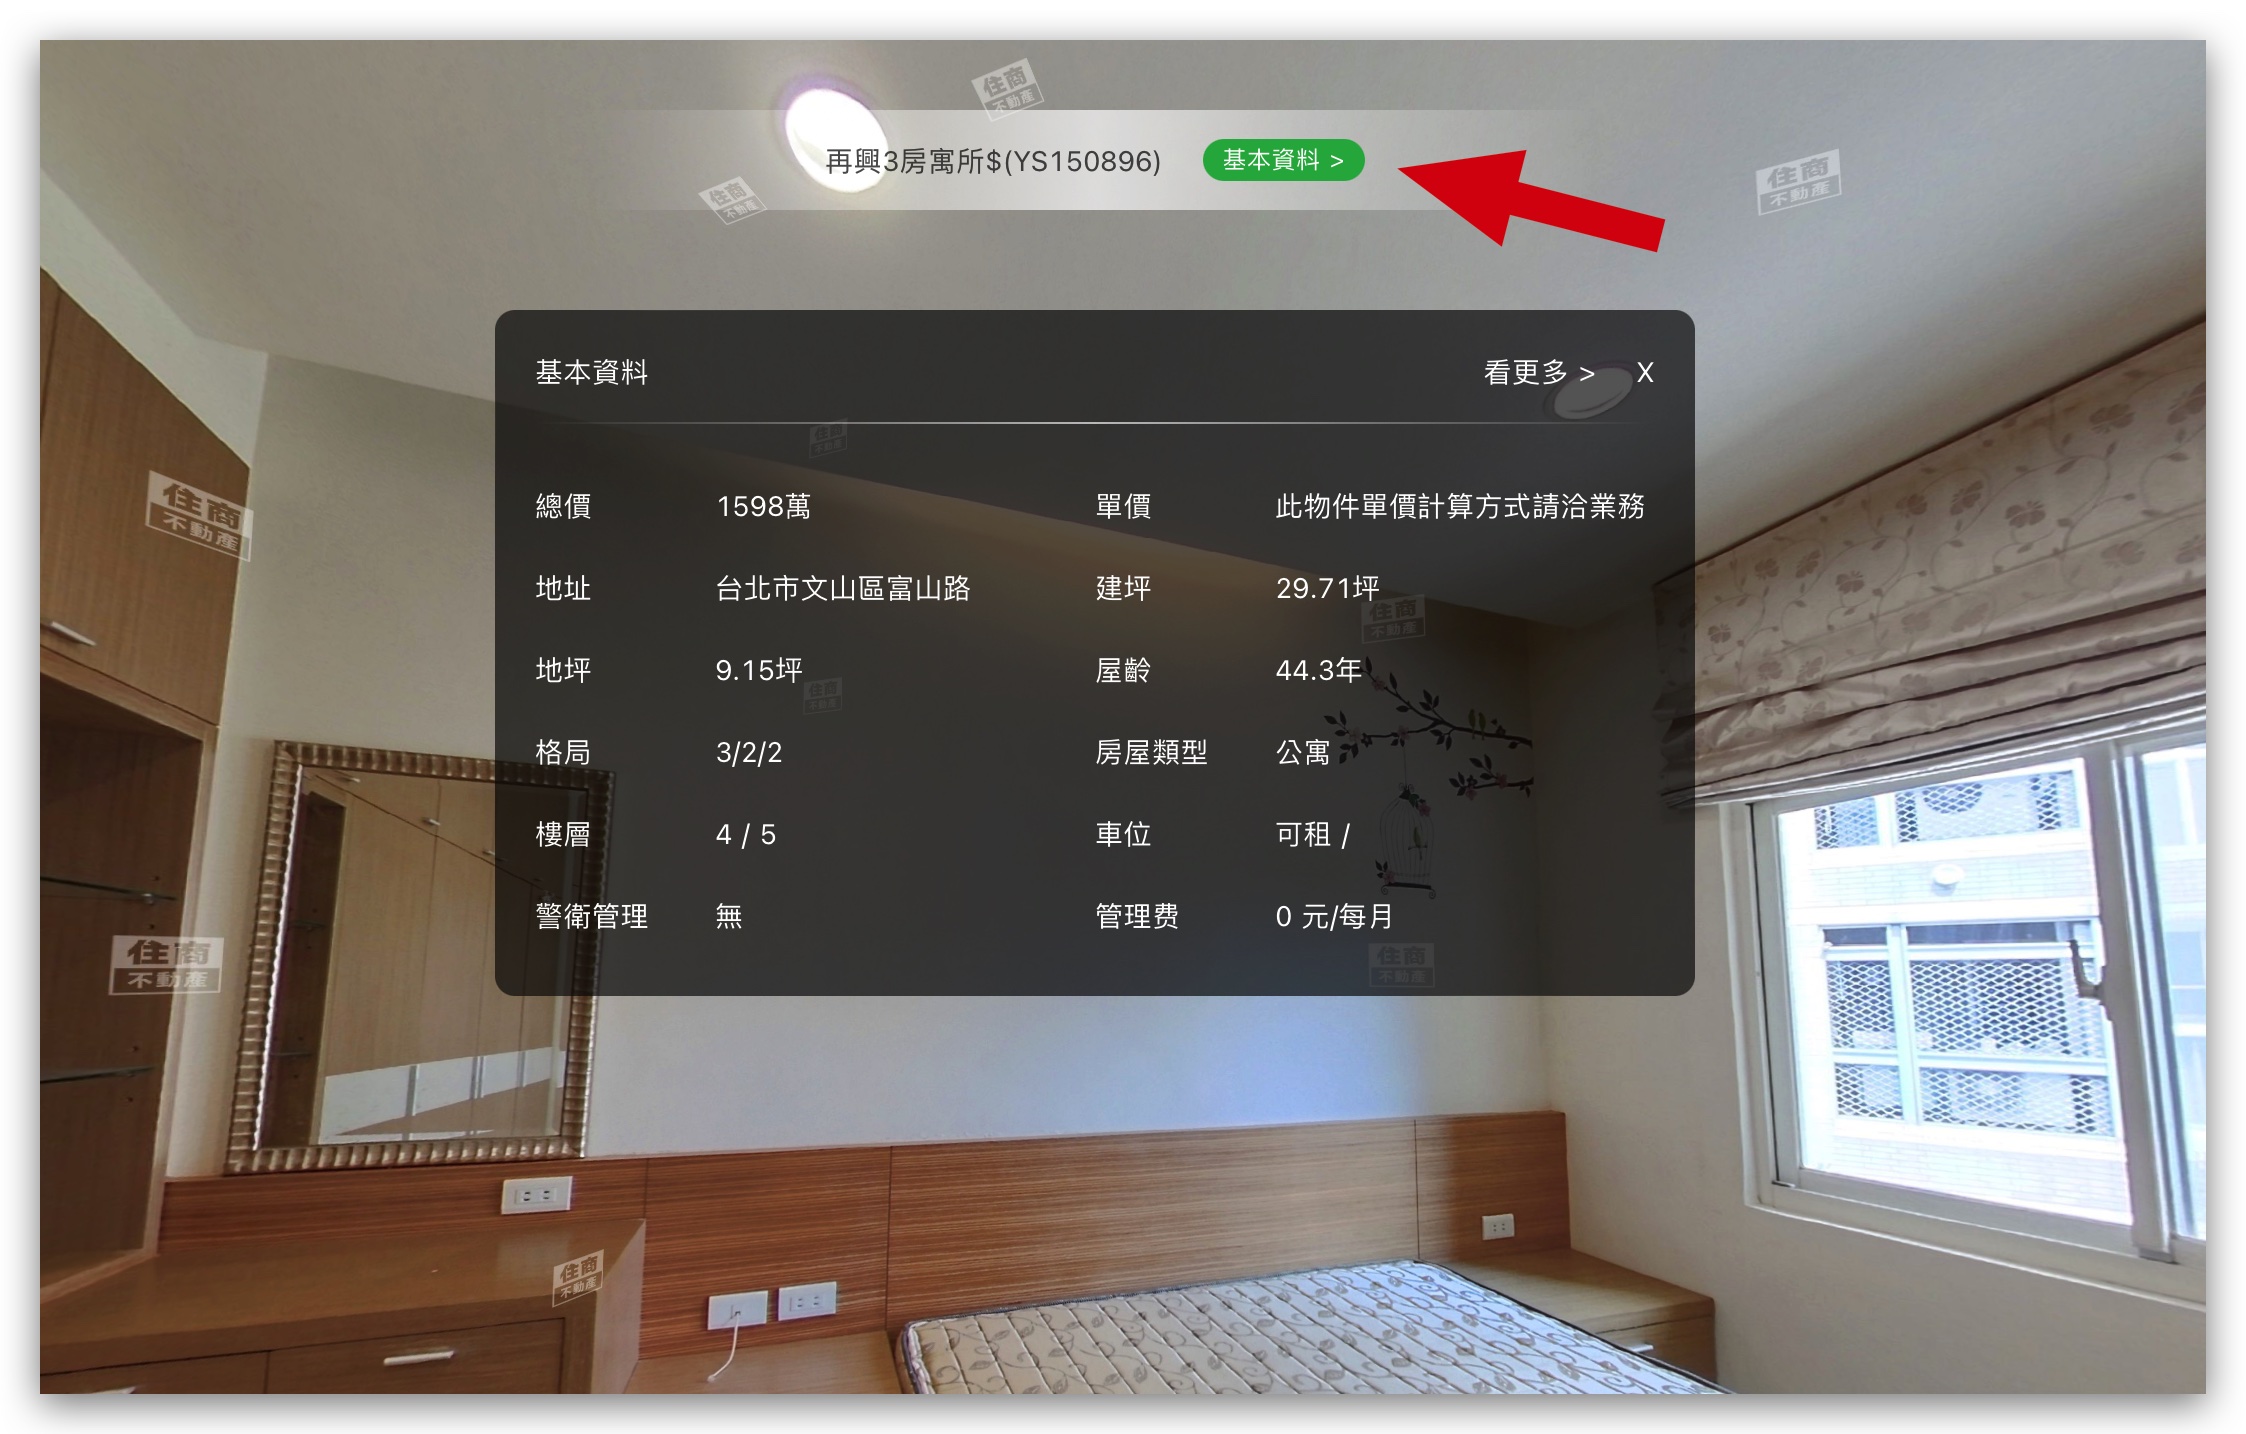 VR 線上上屋 線上看屋 住商不動產 虛擬實境看屋